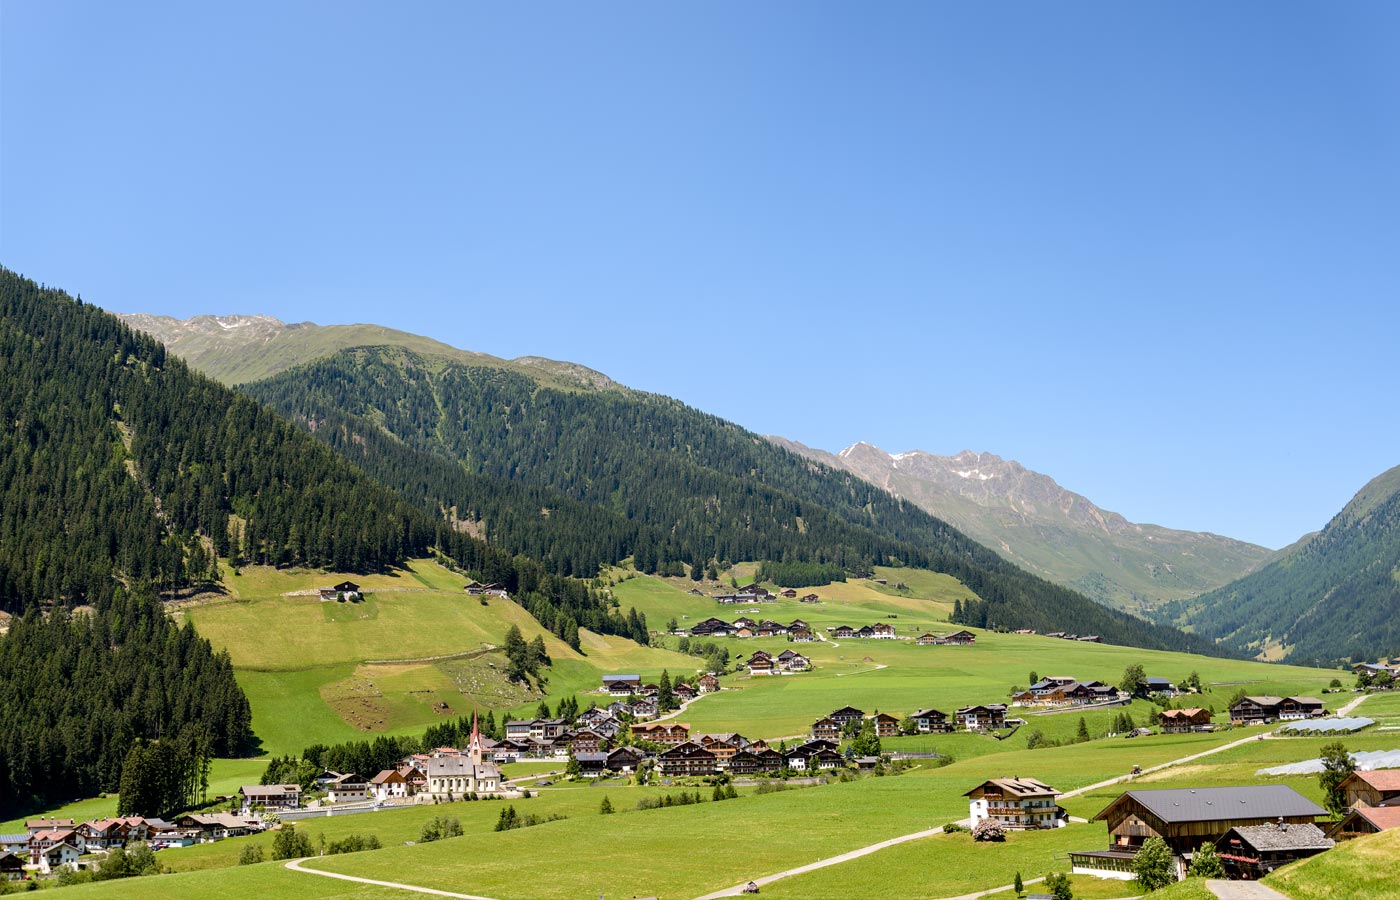 Winterlicher Überblick über das Dorf von Gsies in Südtirol und über das mit Schnee bedeckte Tal.